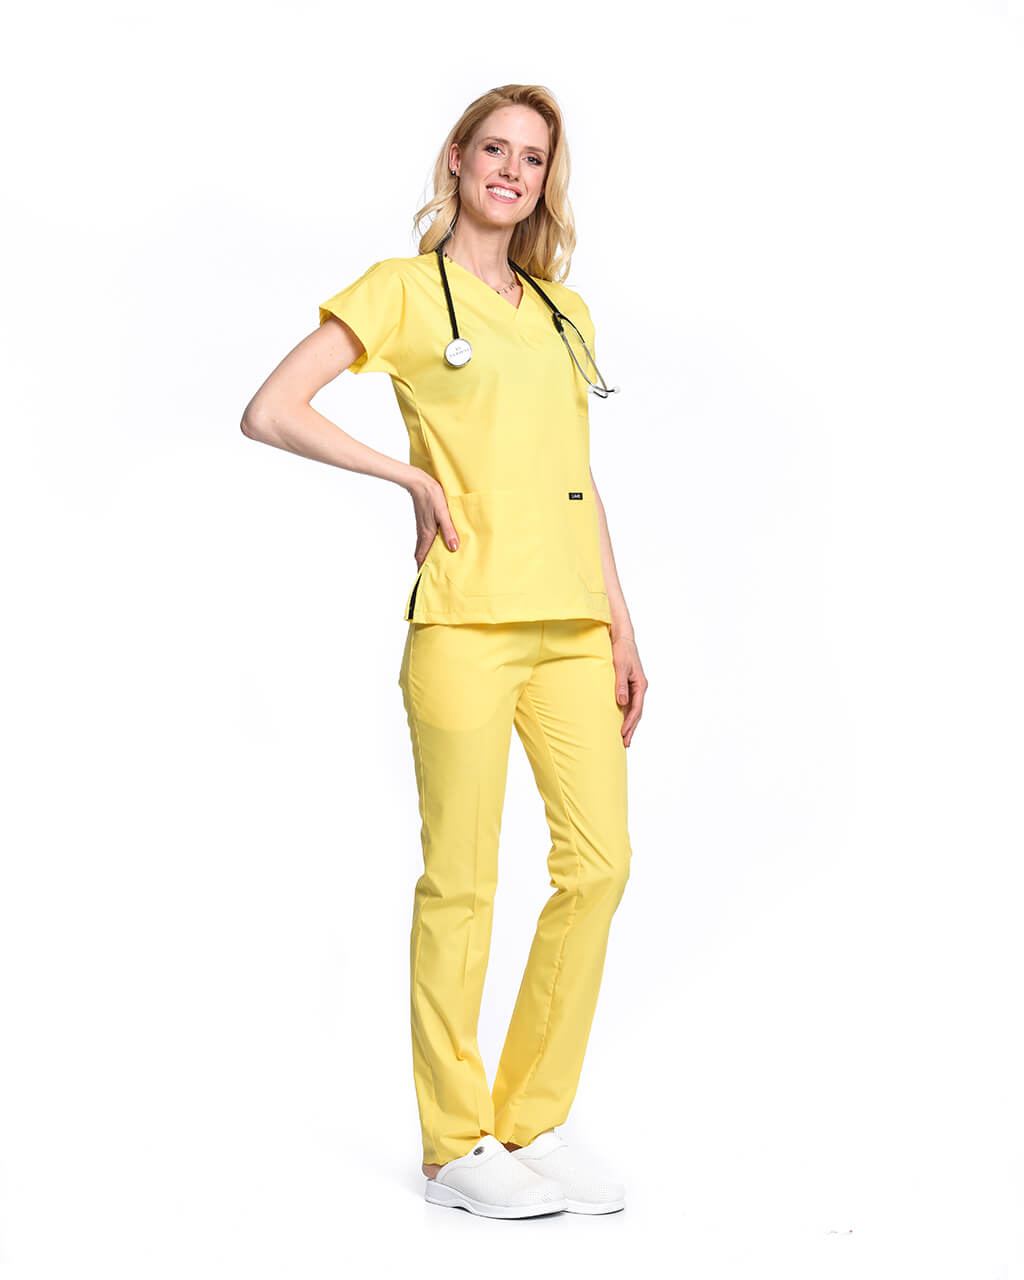 Kadın Terrycotton Sarı Doktor & Hemşire Forması Takımı